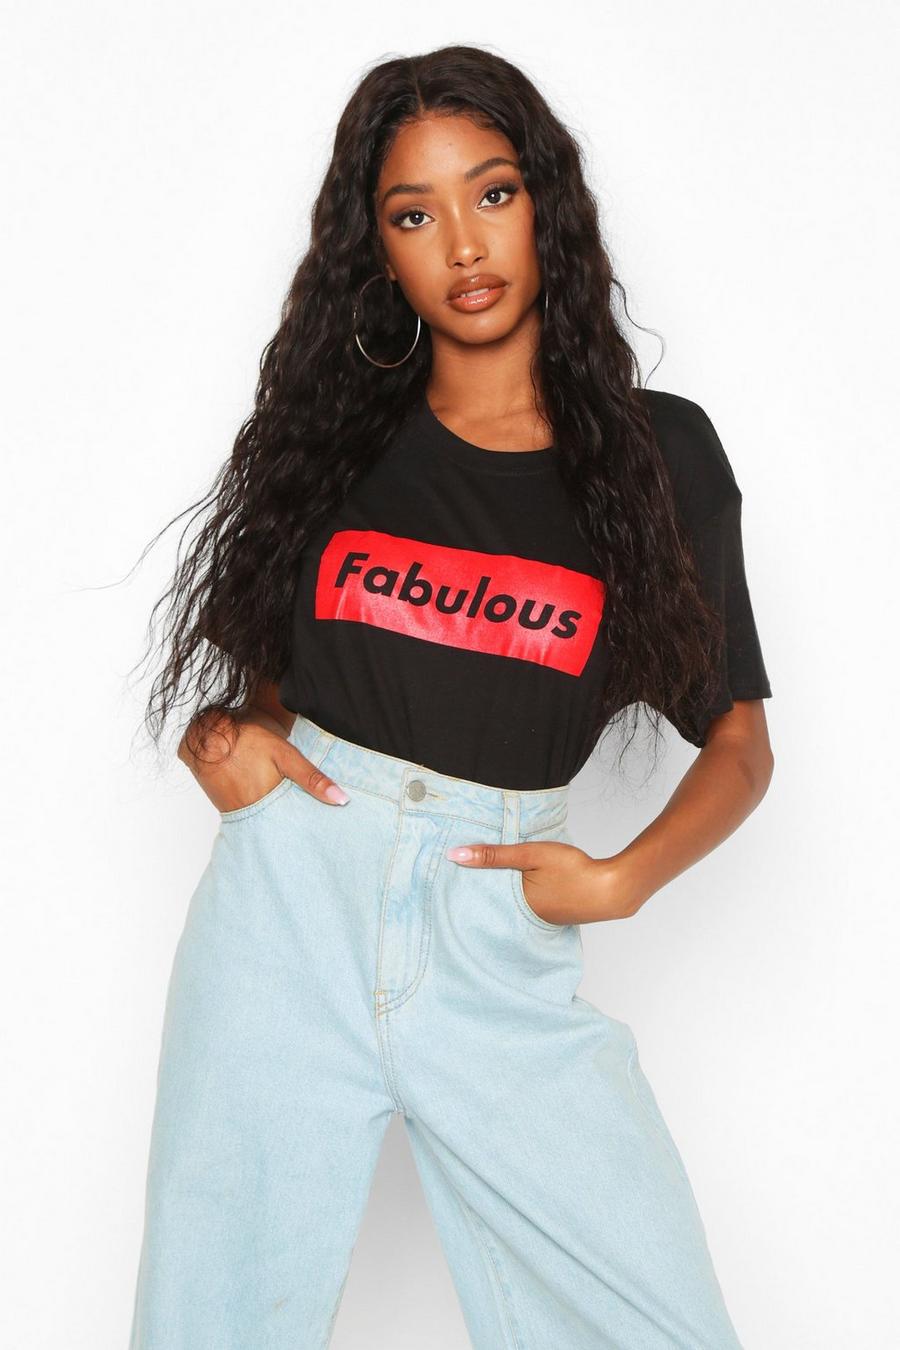 Camiseta con eslogan “Fabulous” image number 1